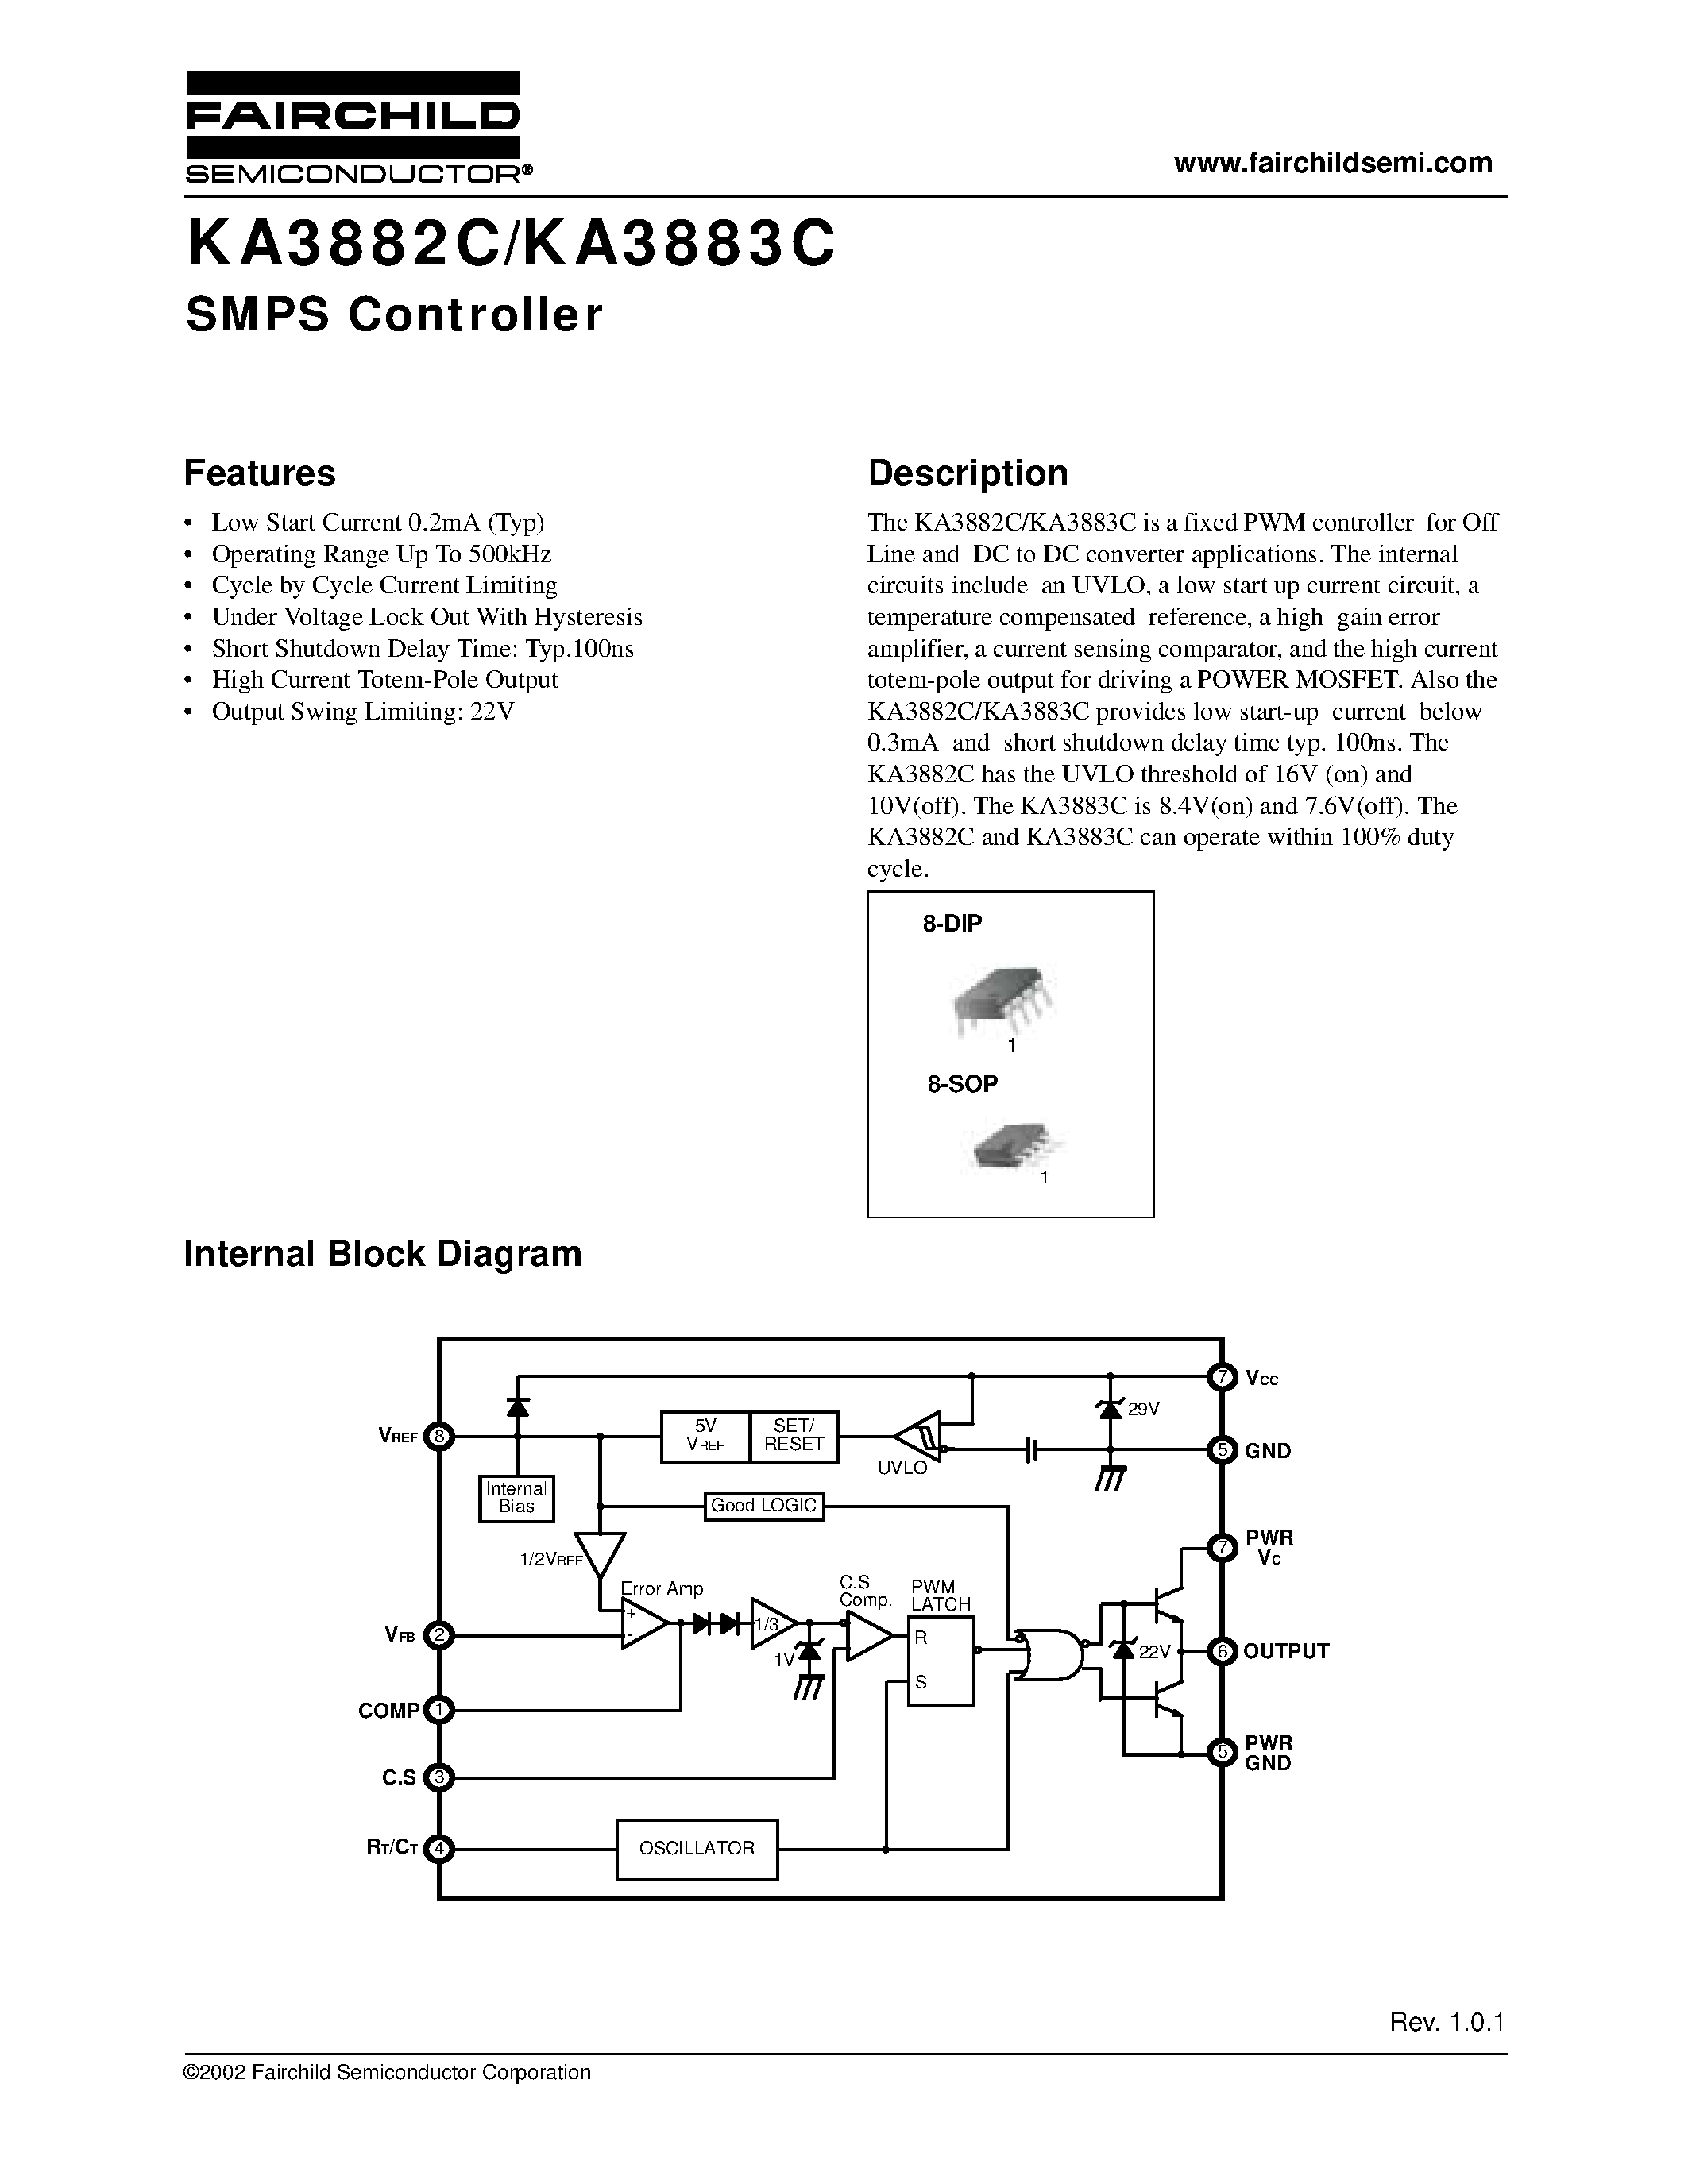 Datasheet KA3883C - SMPS Controller page 1